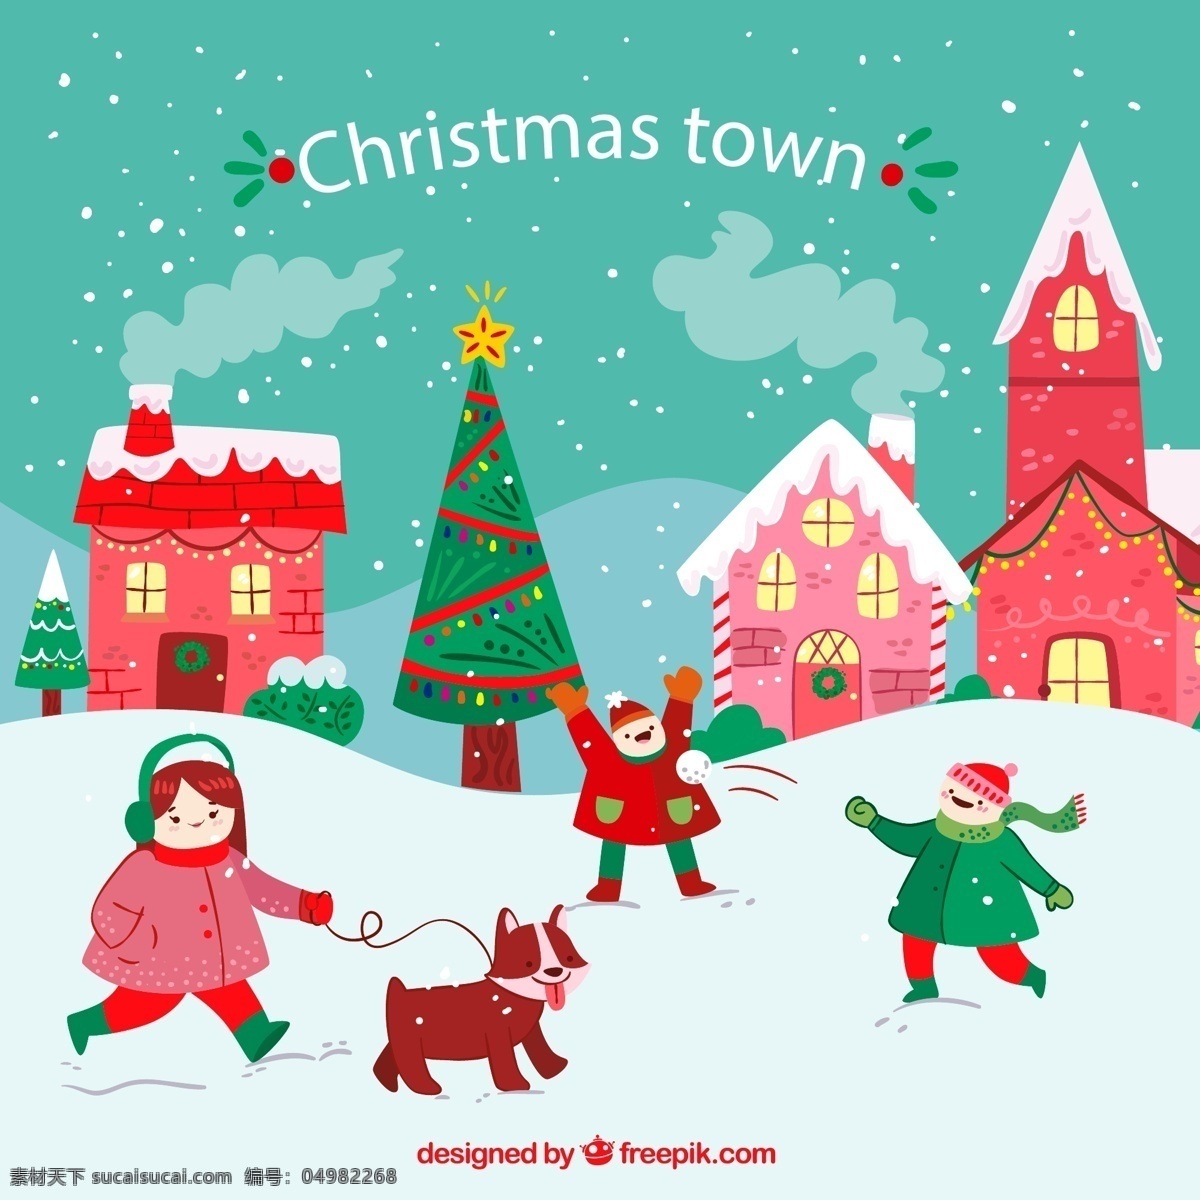 圣诞 小城 人物图片 雪人 房屋 女孩 圣诞树 打雪仗 源文件 矢量 高清图片